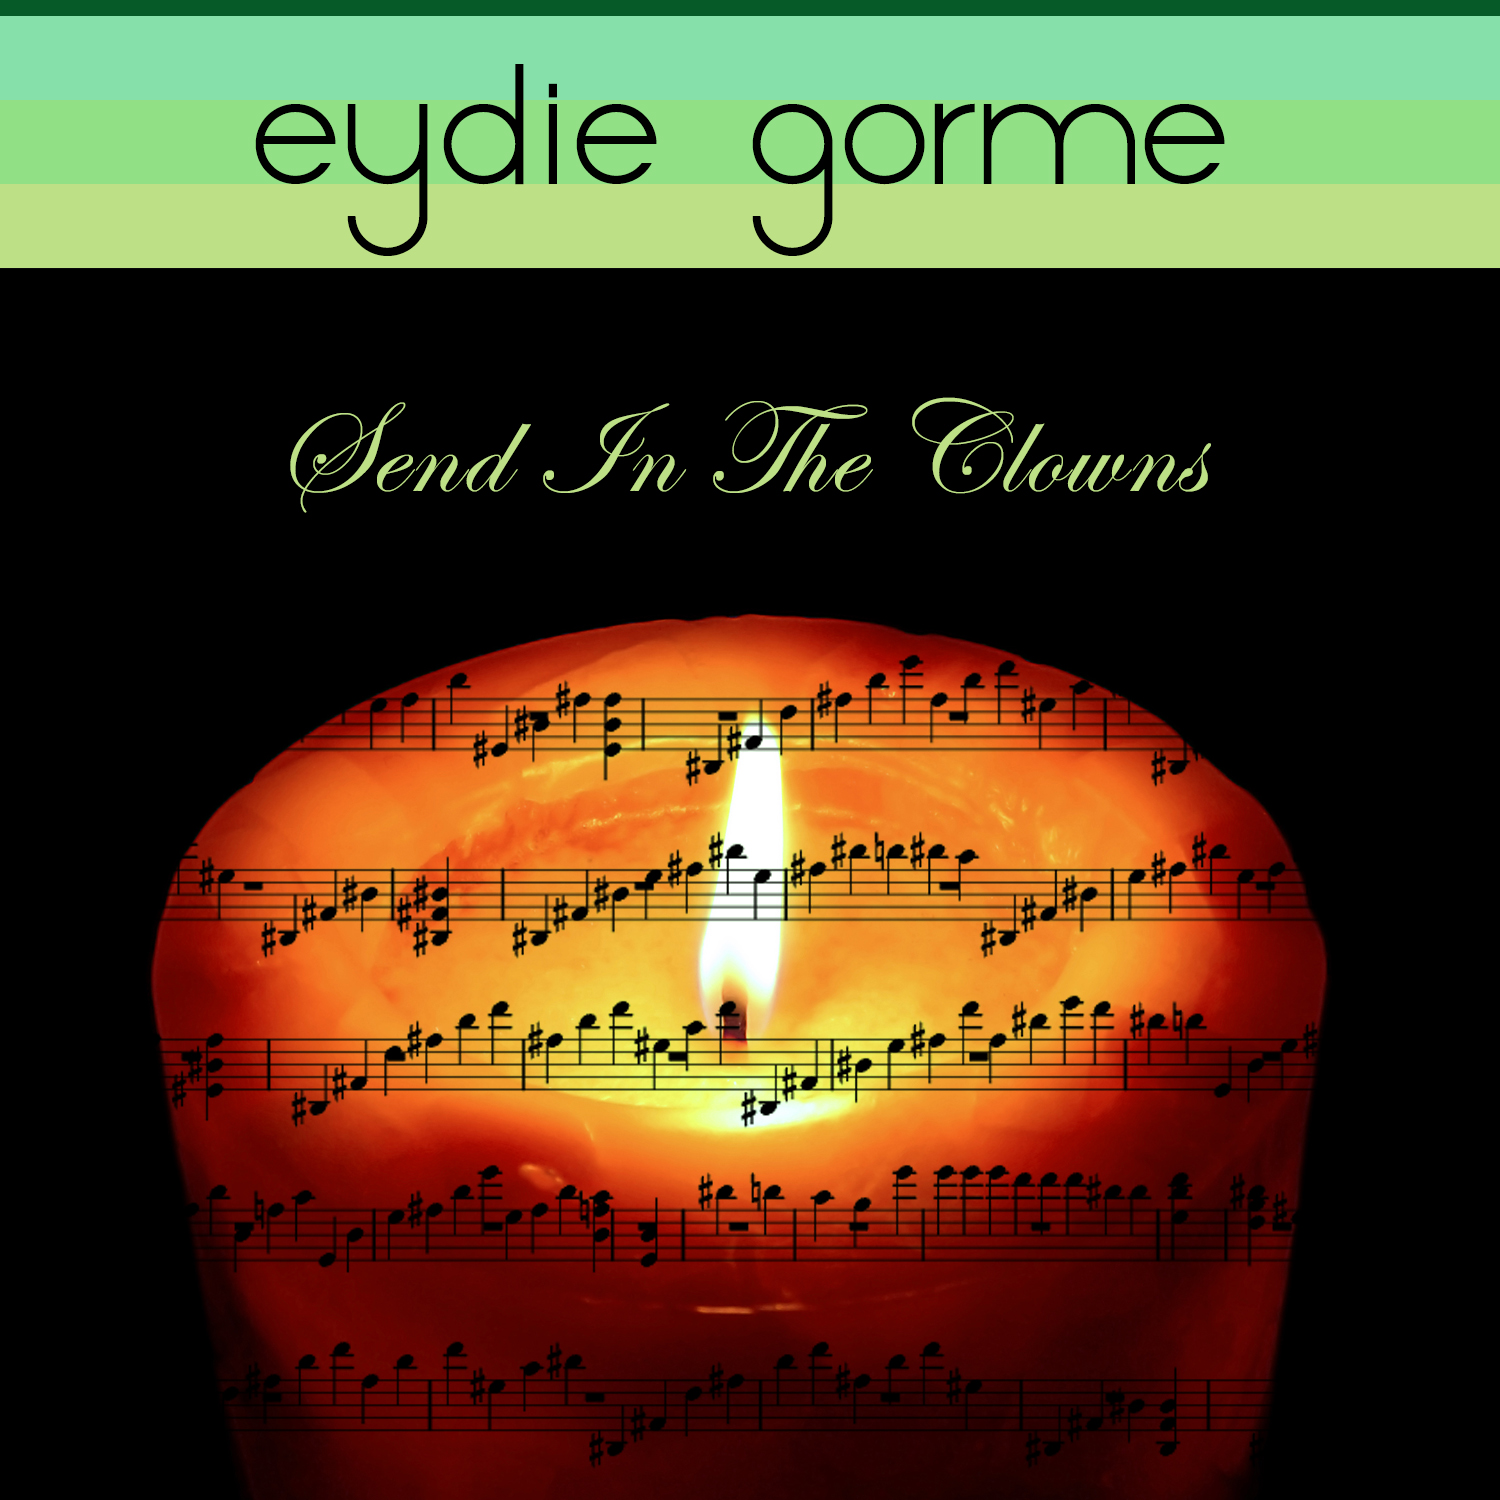 Send in the Clowns by Eydie Gorme